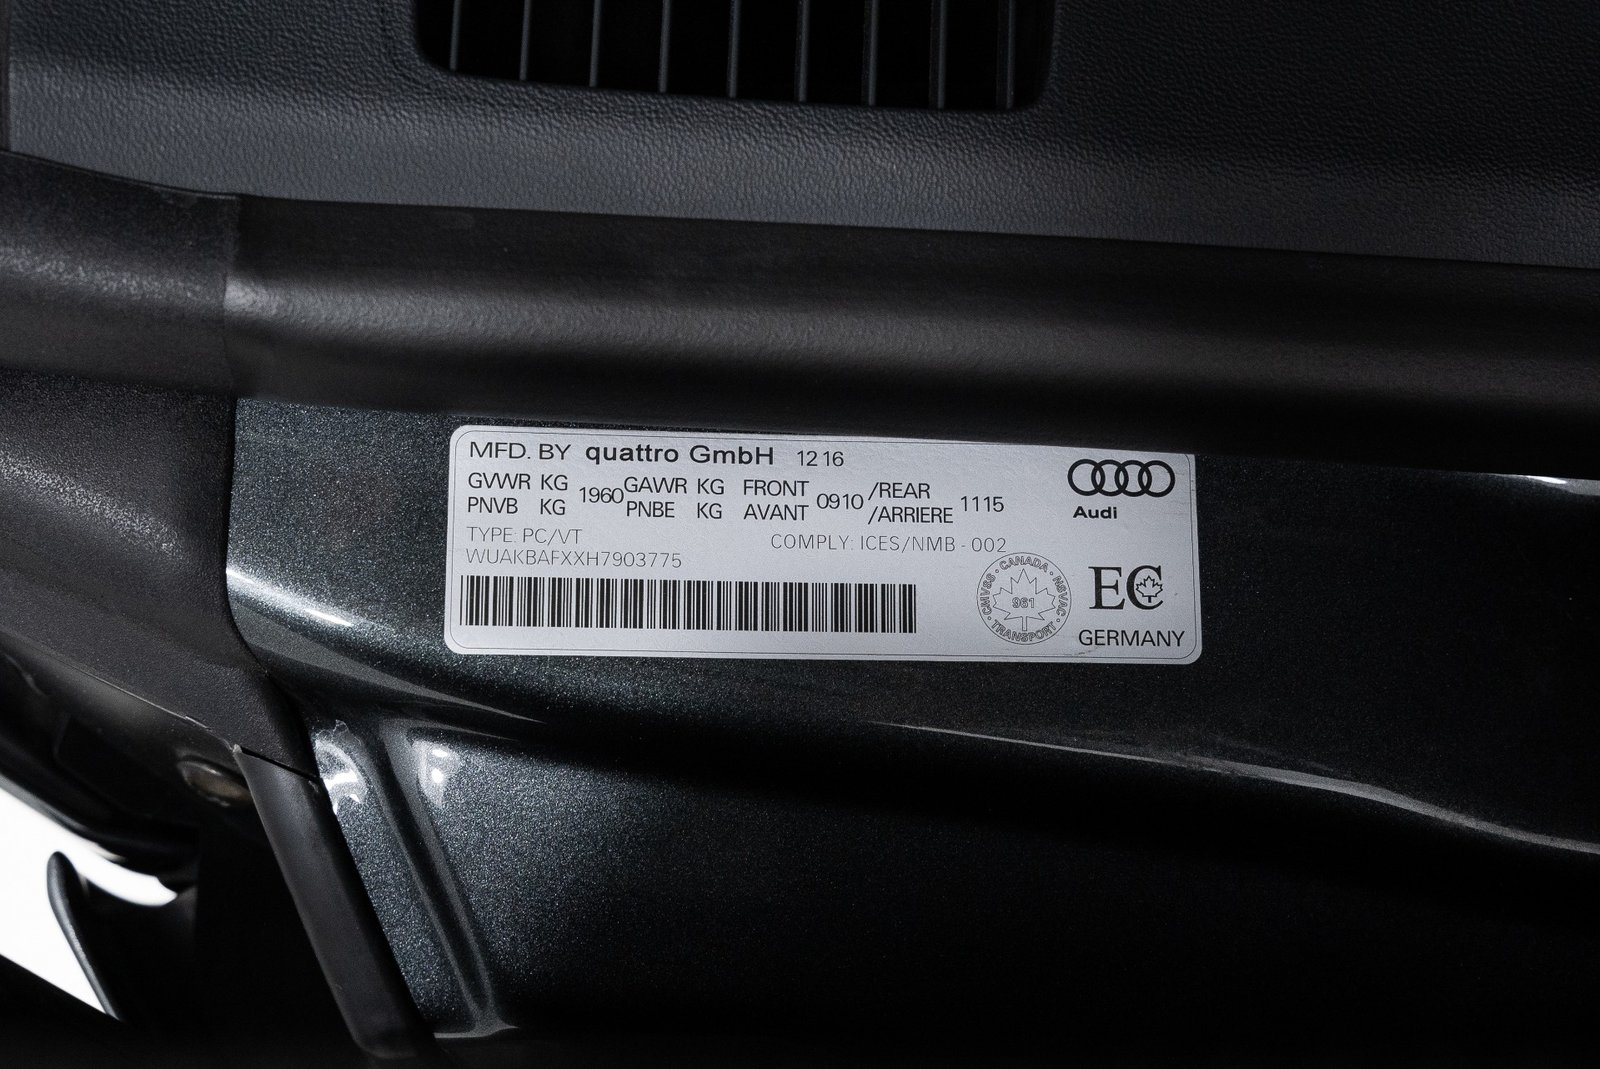 New 2017 AUDI R8 5.2 QUATTRO V10 PLUS (26)